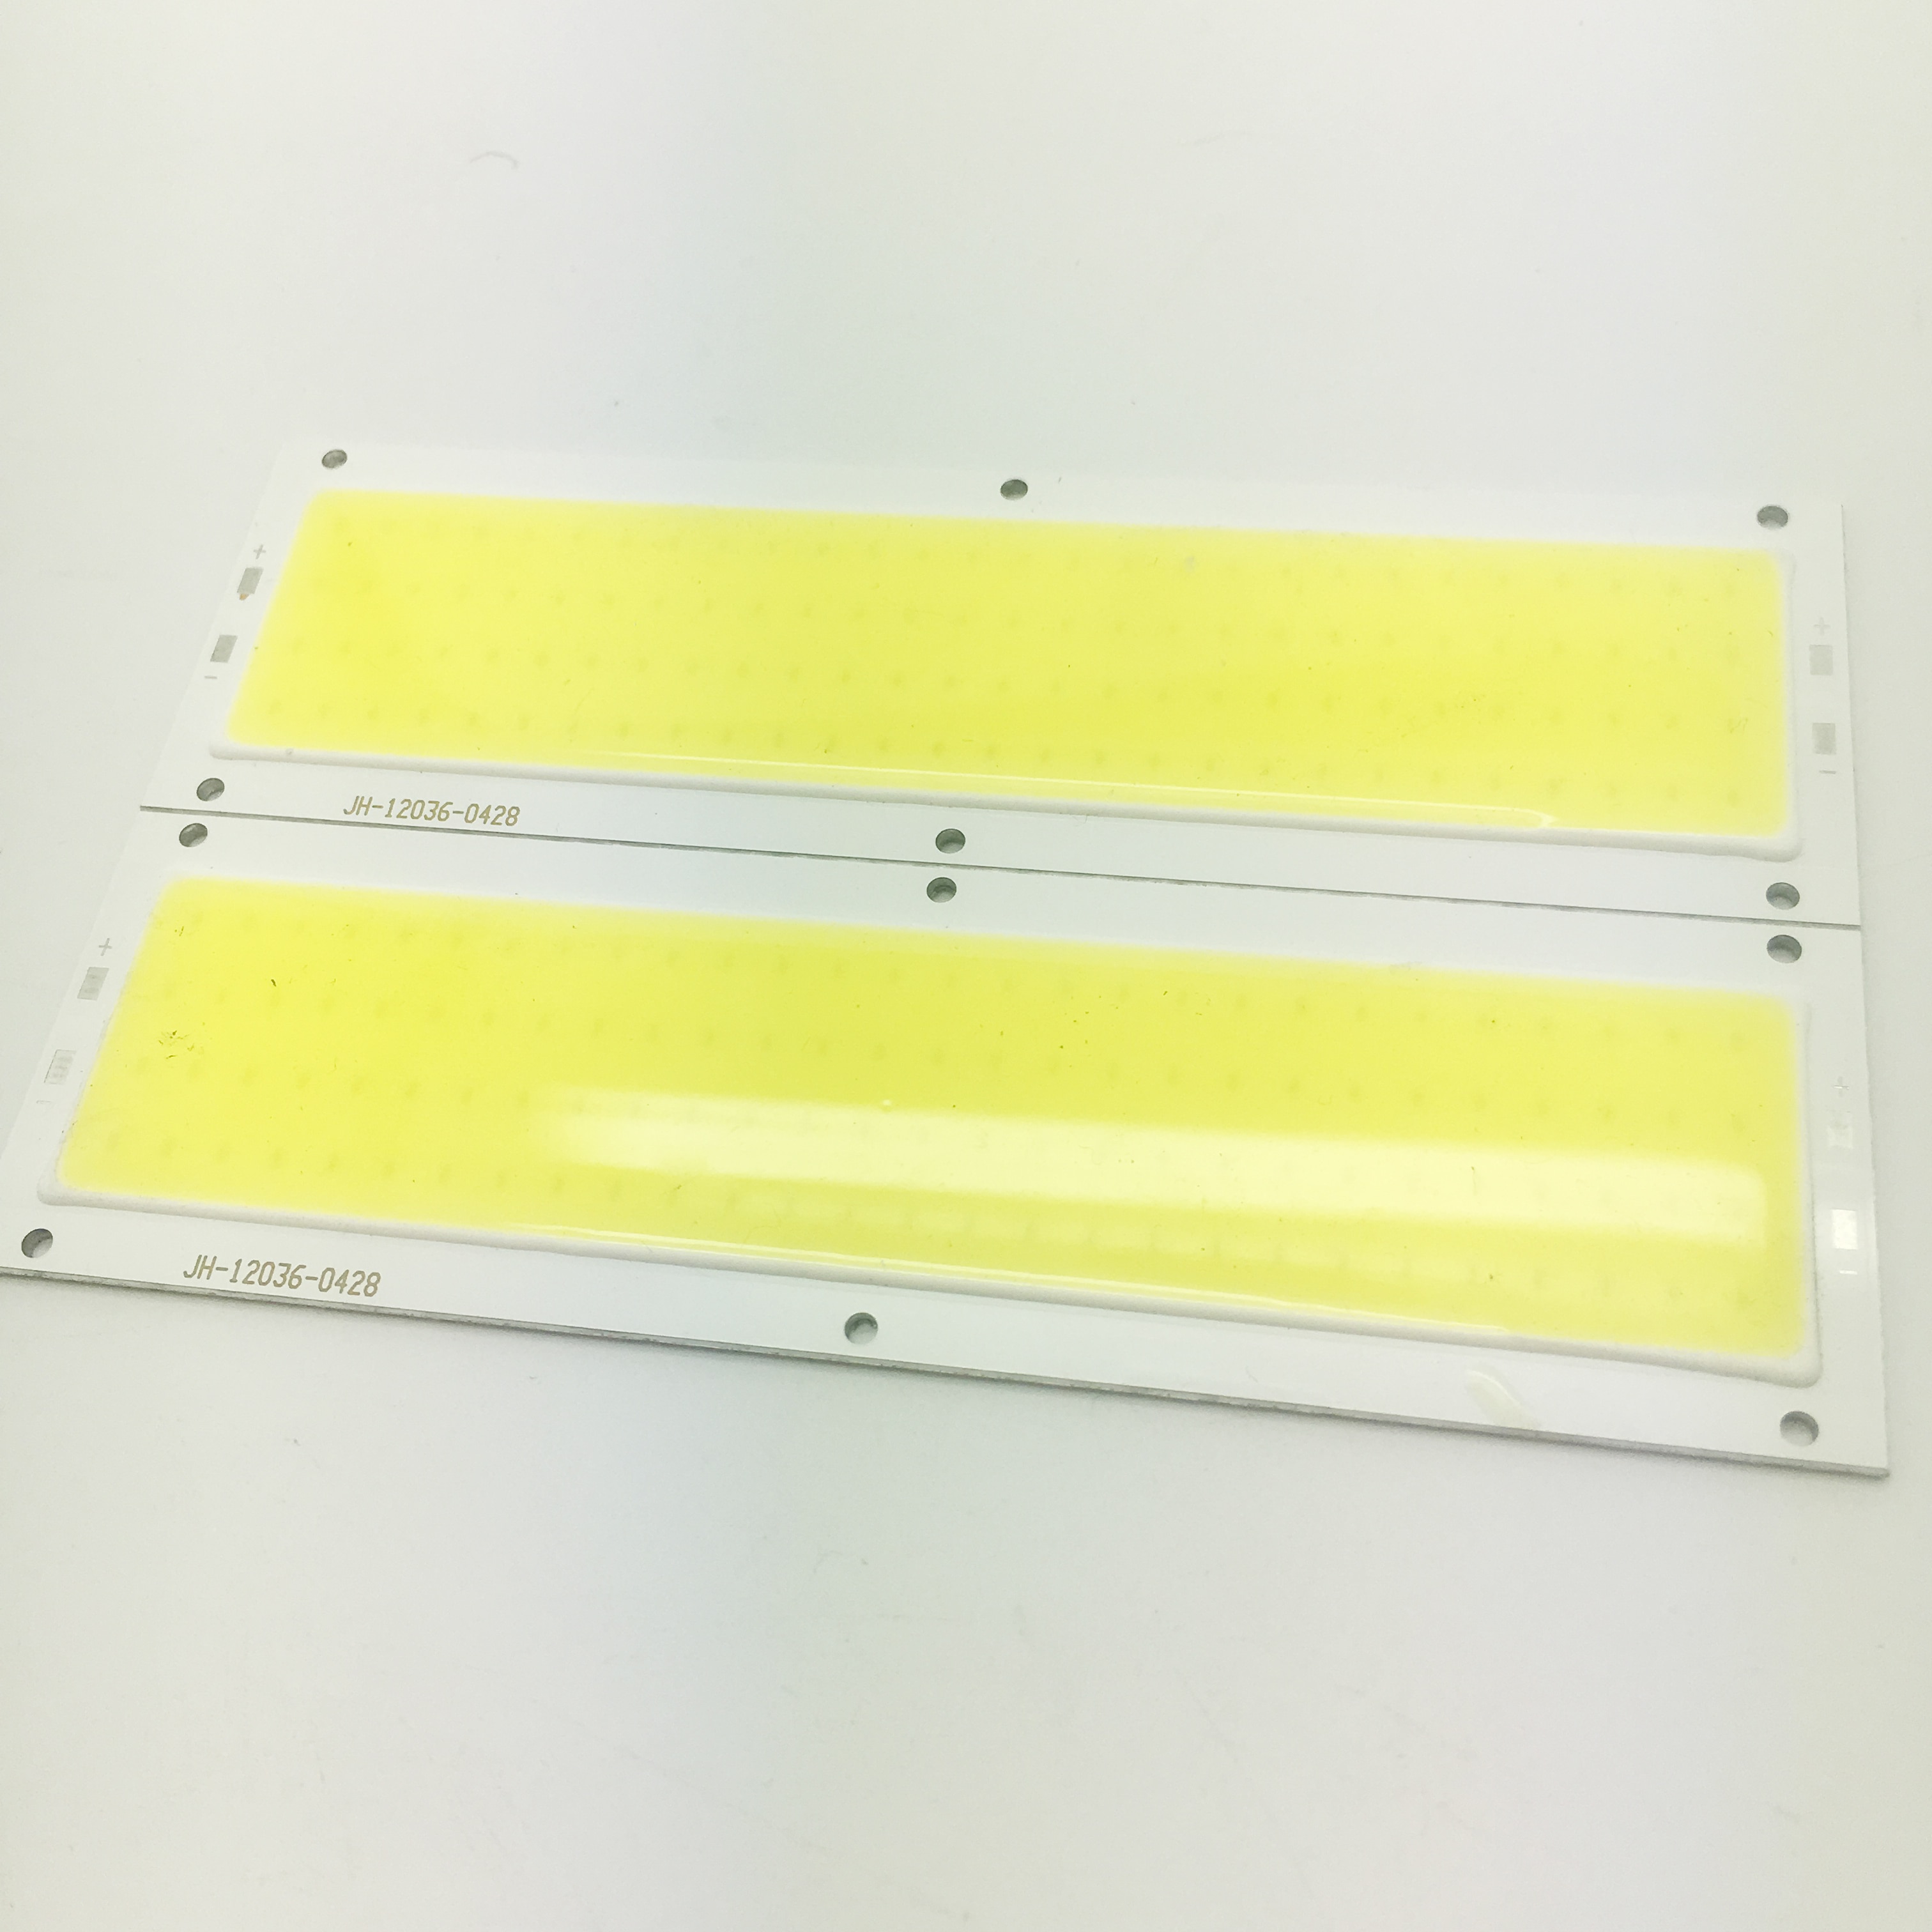 Promation 10w 12v strip cob led chips høj lumen hvid farve til arbejdslamper